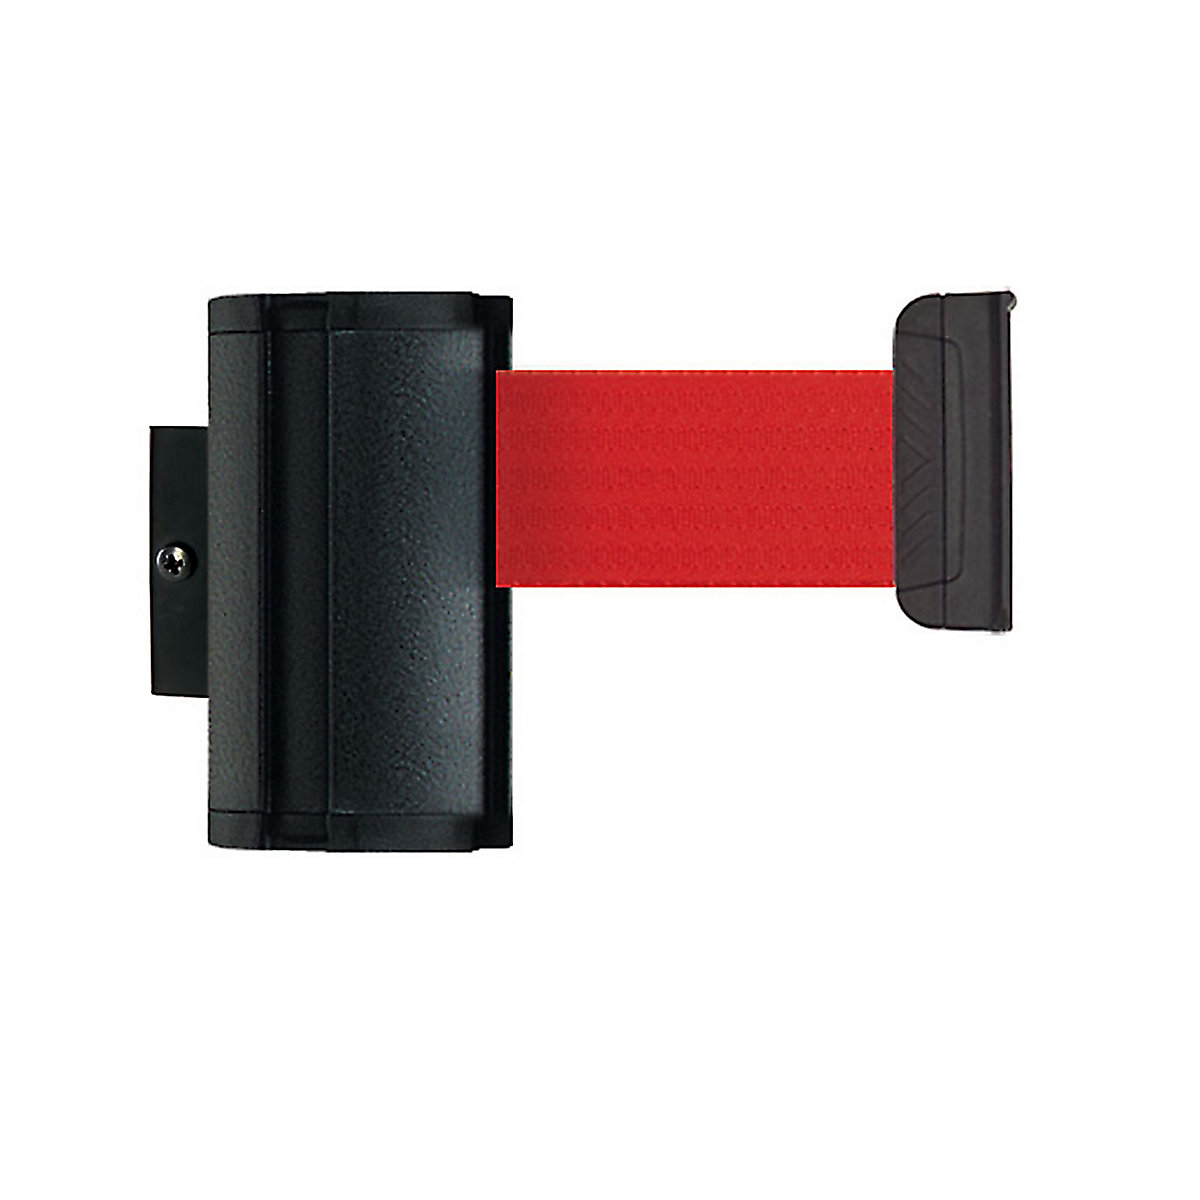 Cassetta per nastro Wall Mount, estrazione nastro max 2300 mm, nastro rosso-4